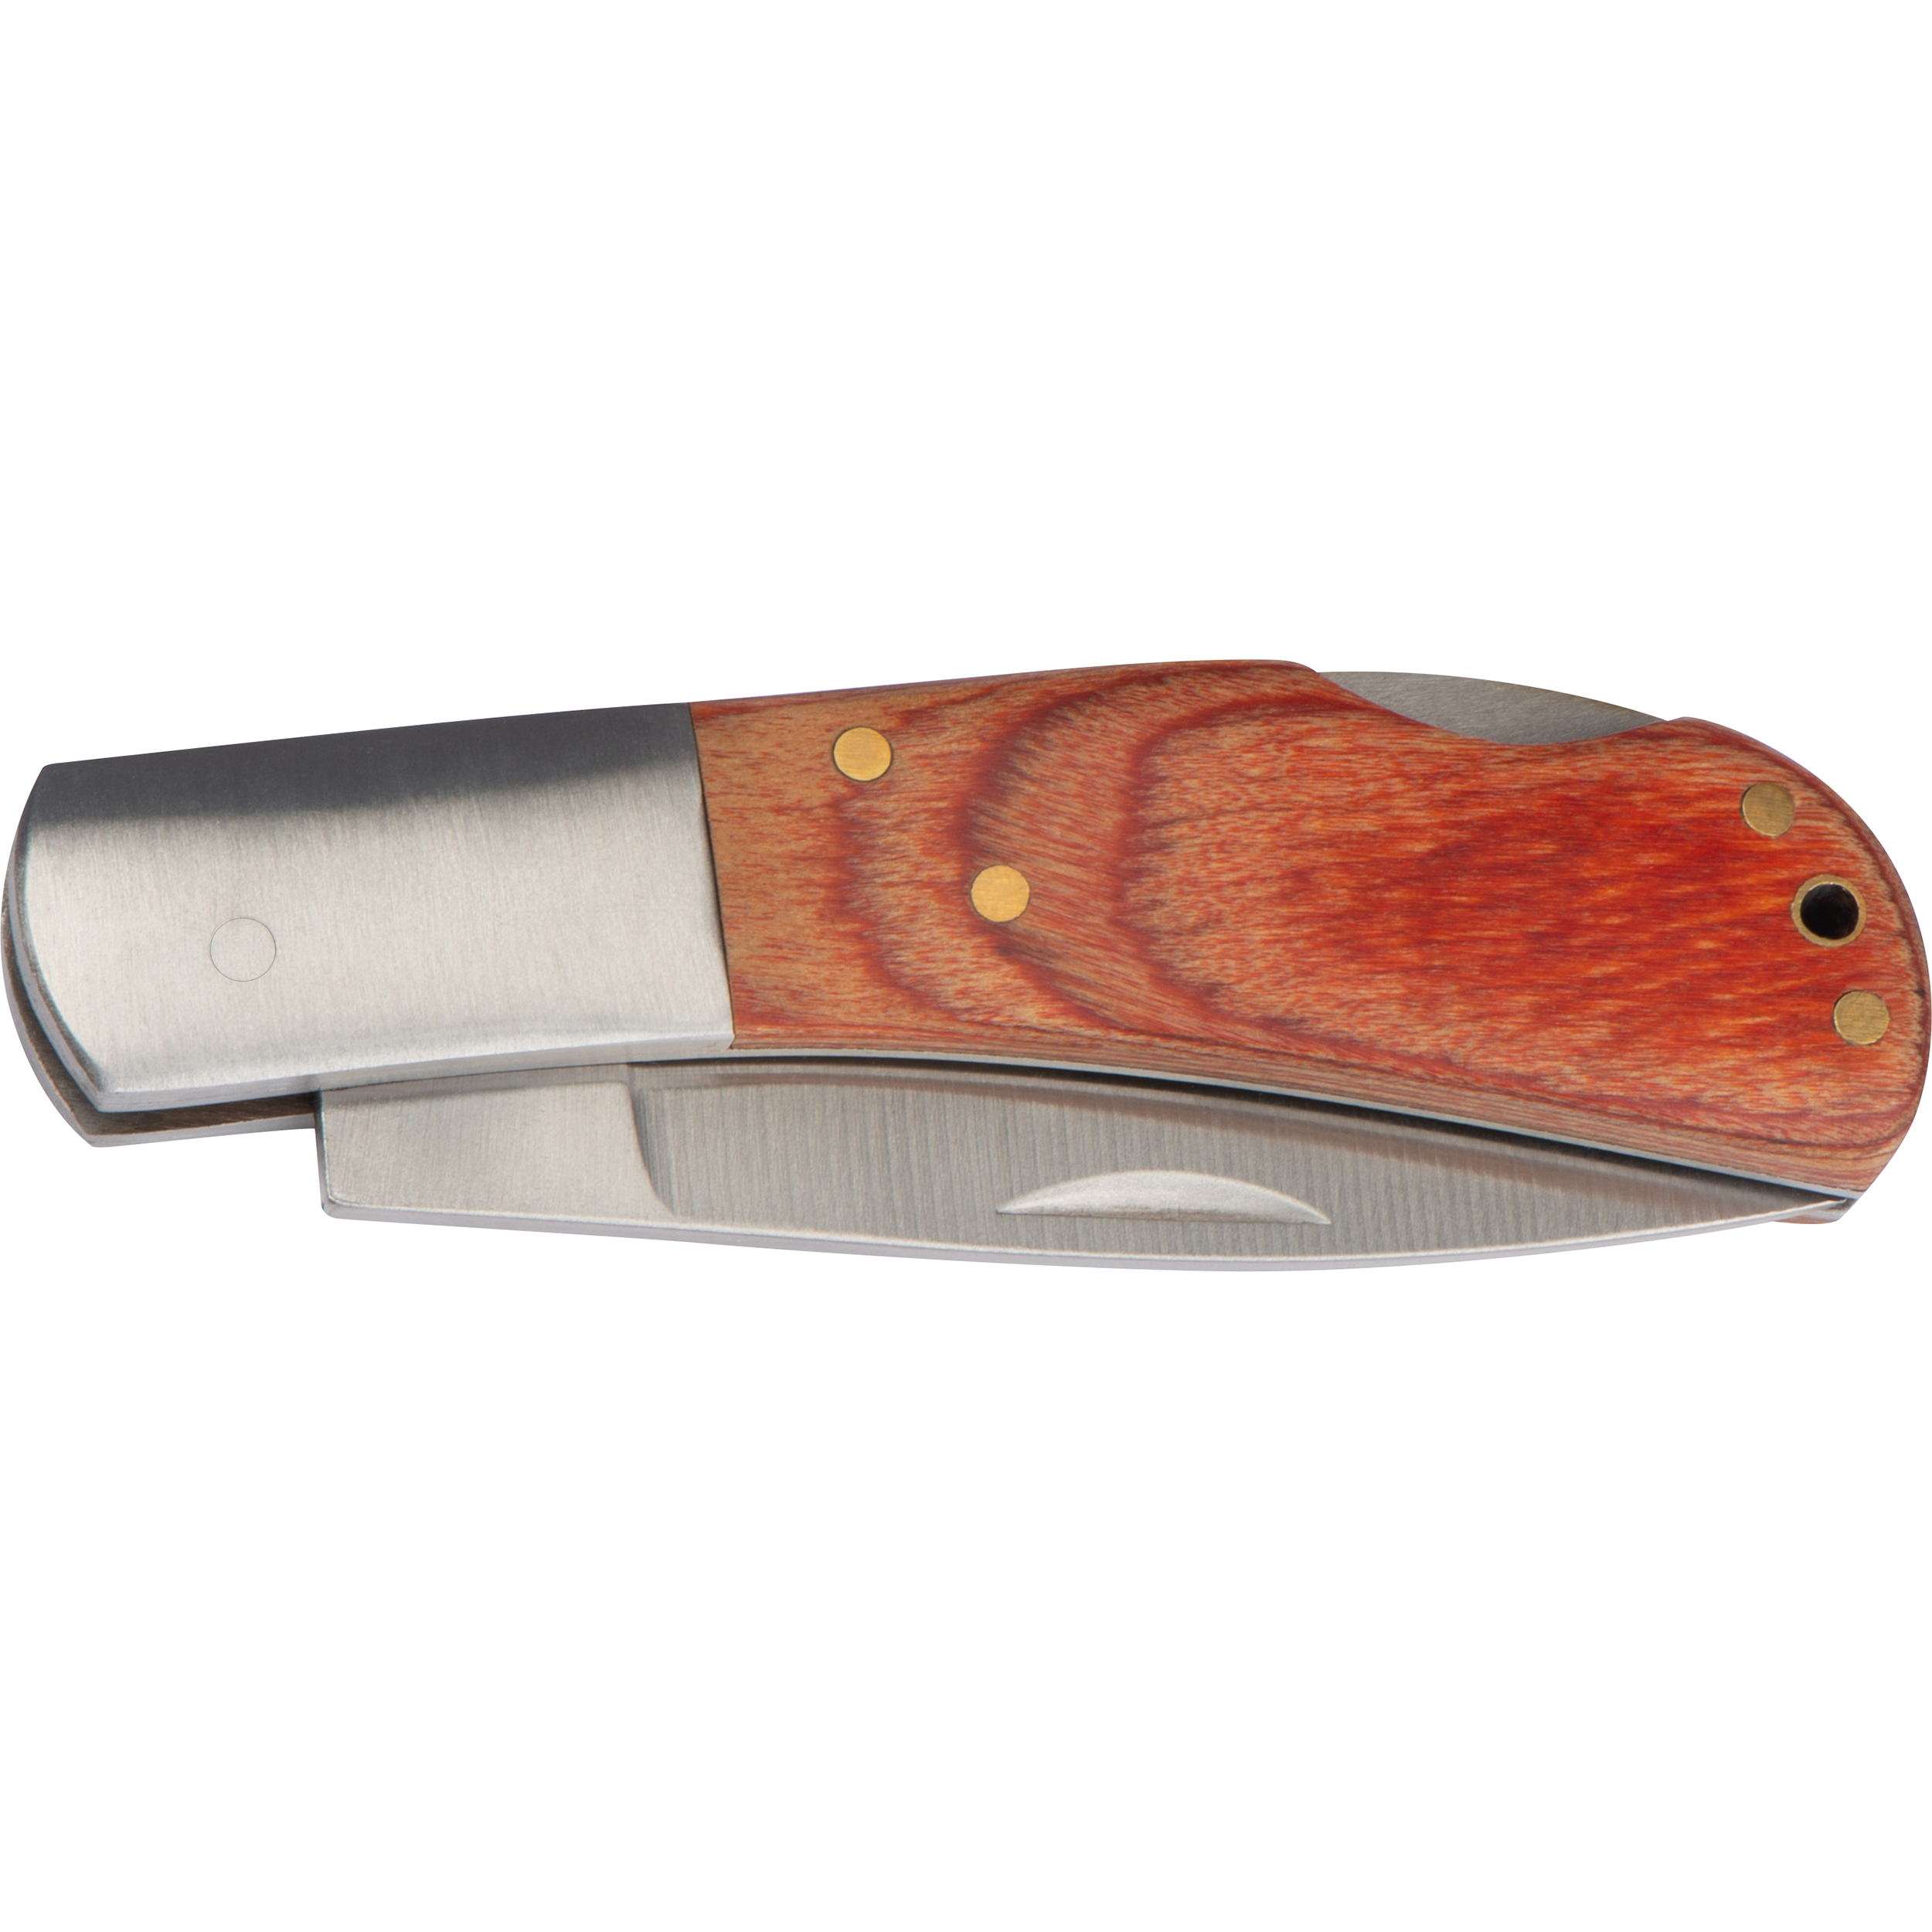 Cuchillo plegable con mango de madera